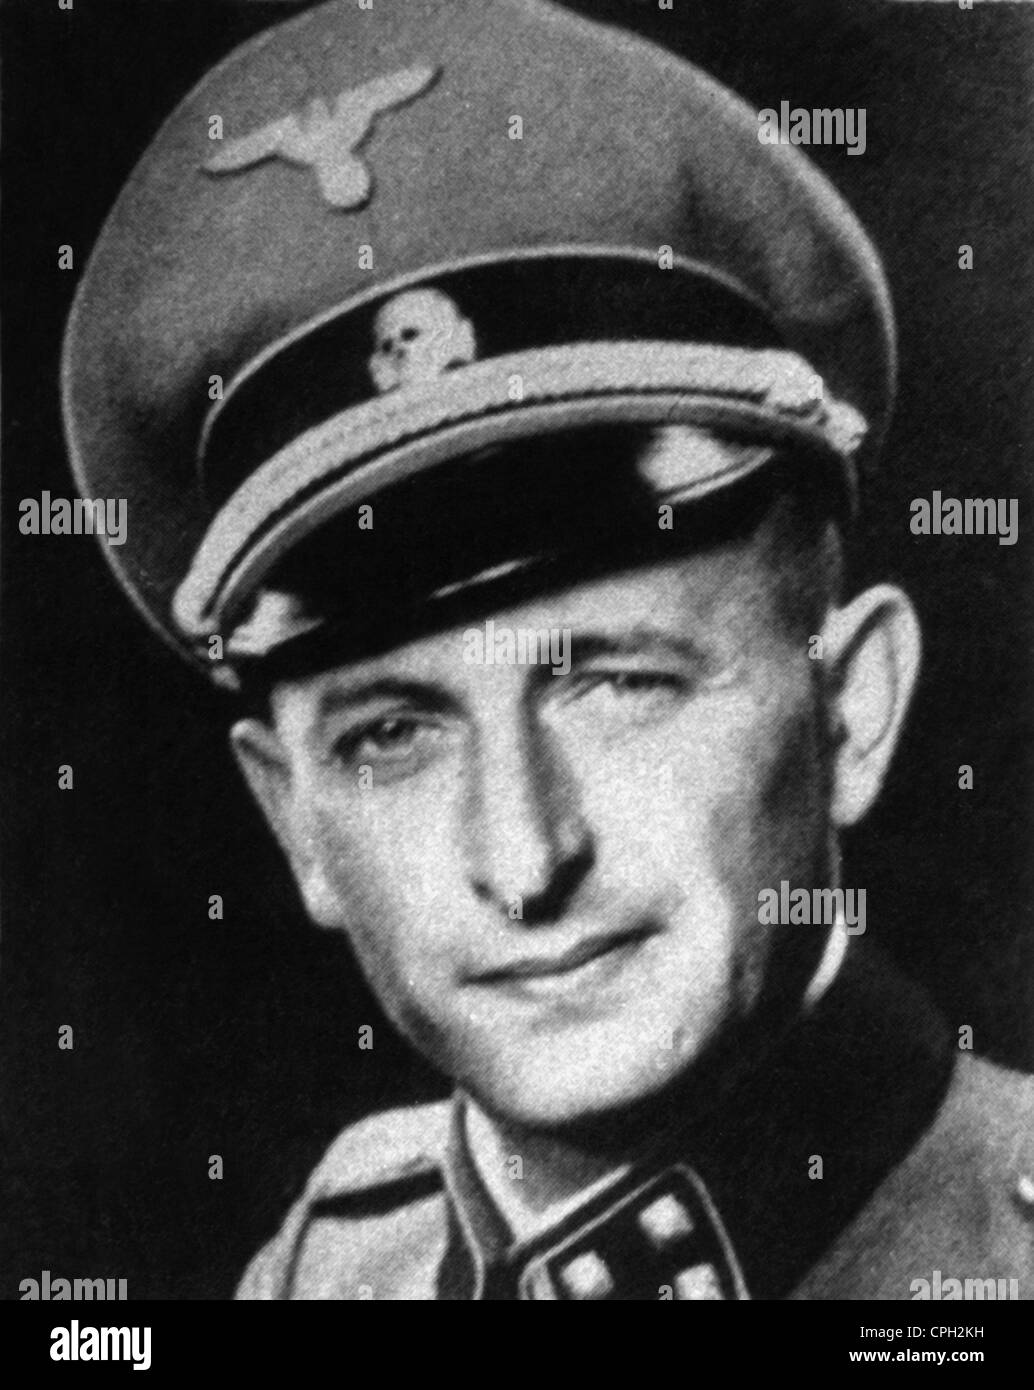 Eichmann, Adolf, 19.3.1906 - 1. 6.1962, österreichischer SS-Offizier, Hauptabteilungsleiter für jüdische Angelegenheiten im Reichssicherheitshauptamt (Reichssicherheitshauptamt, RSHA), Porträt, 1942, Stockfoto